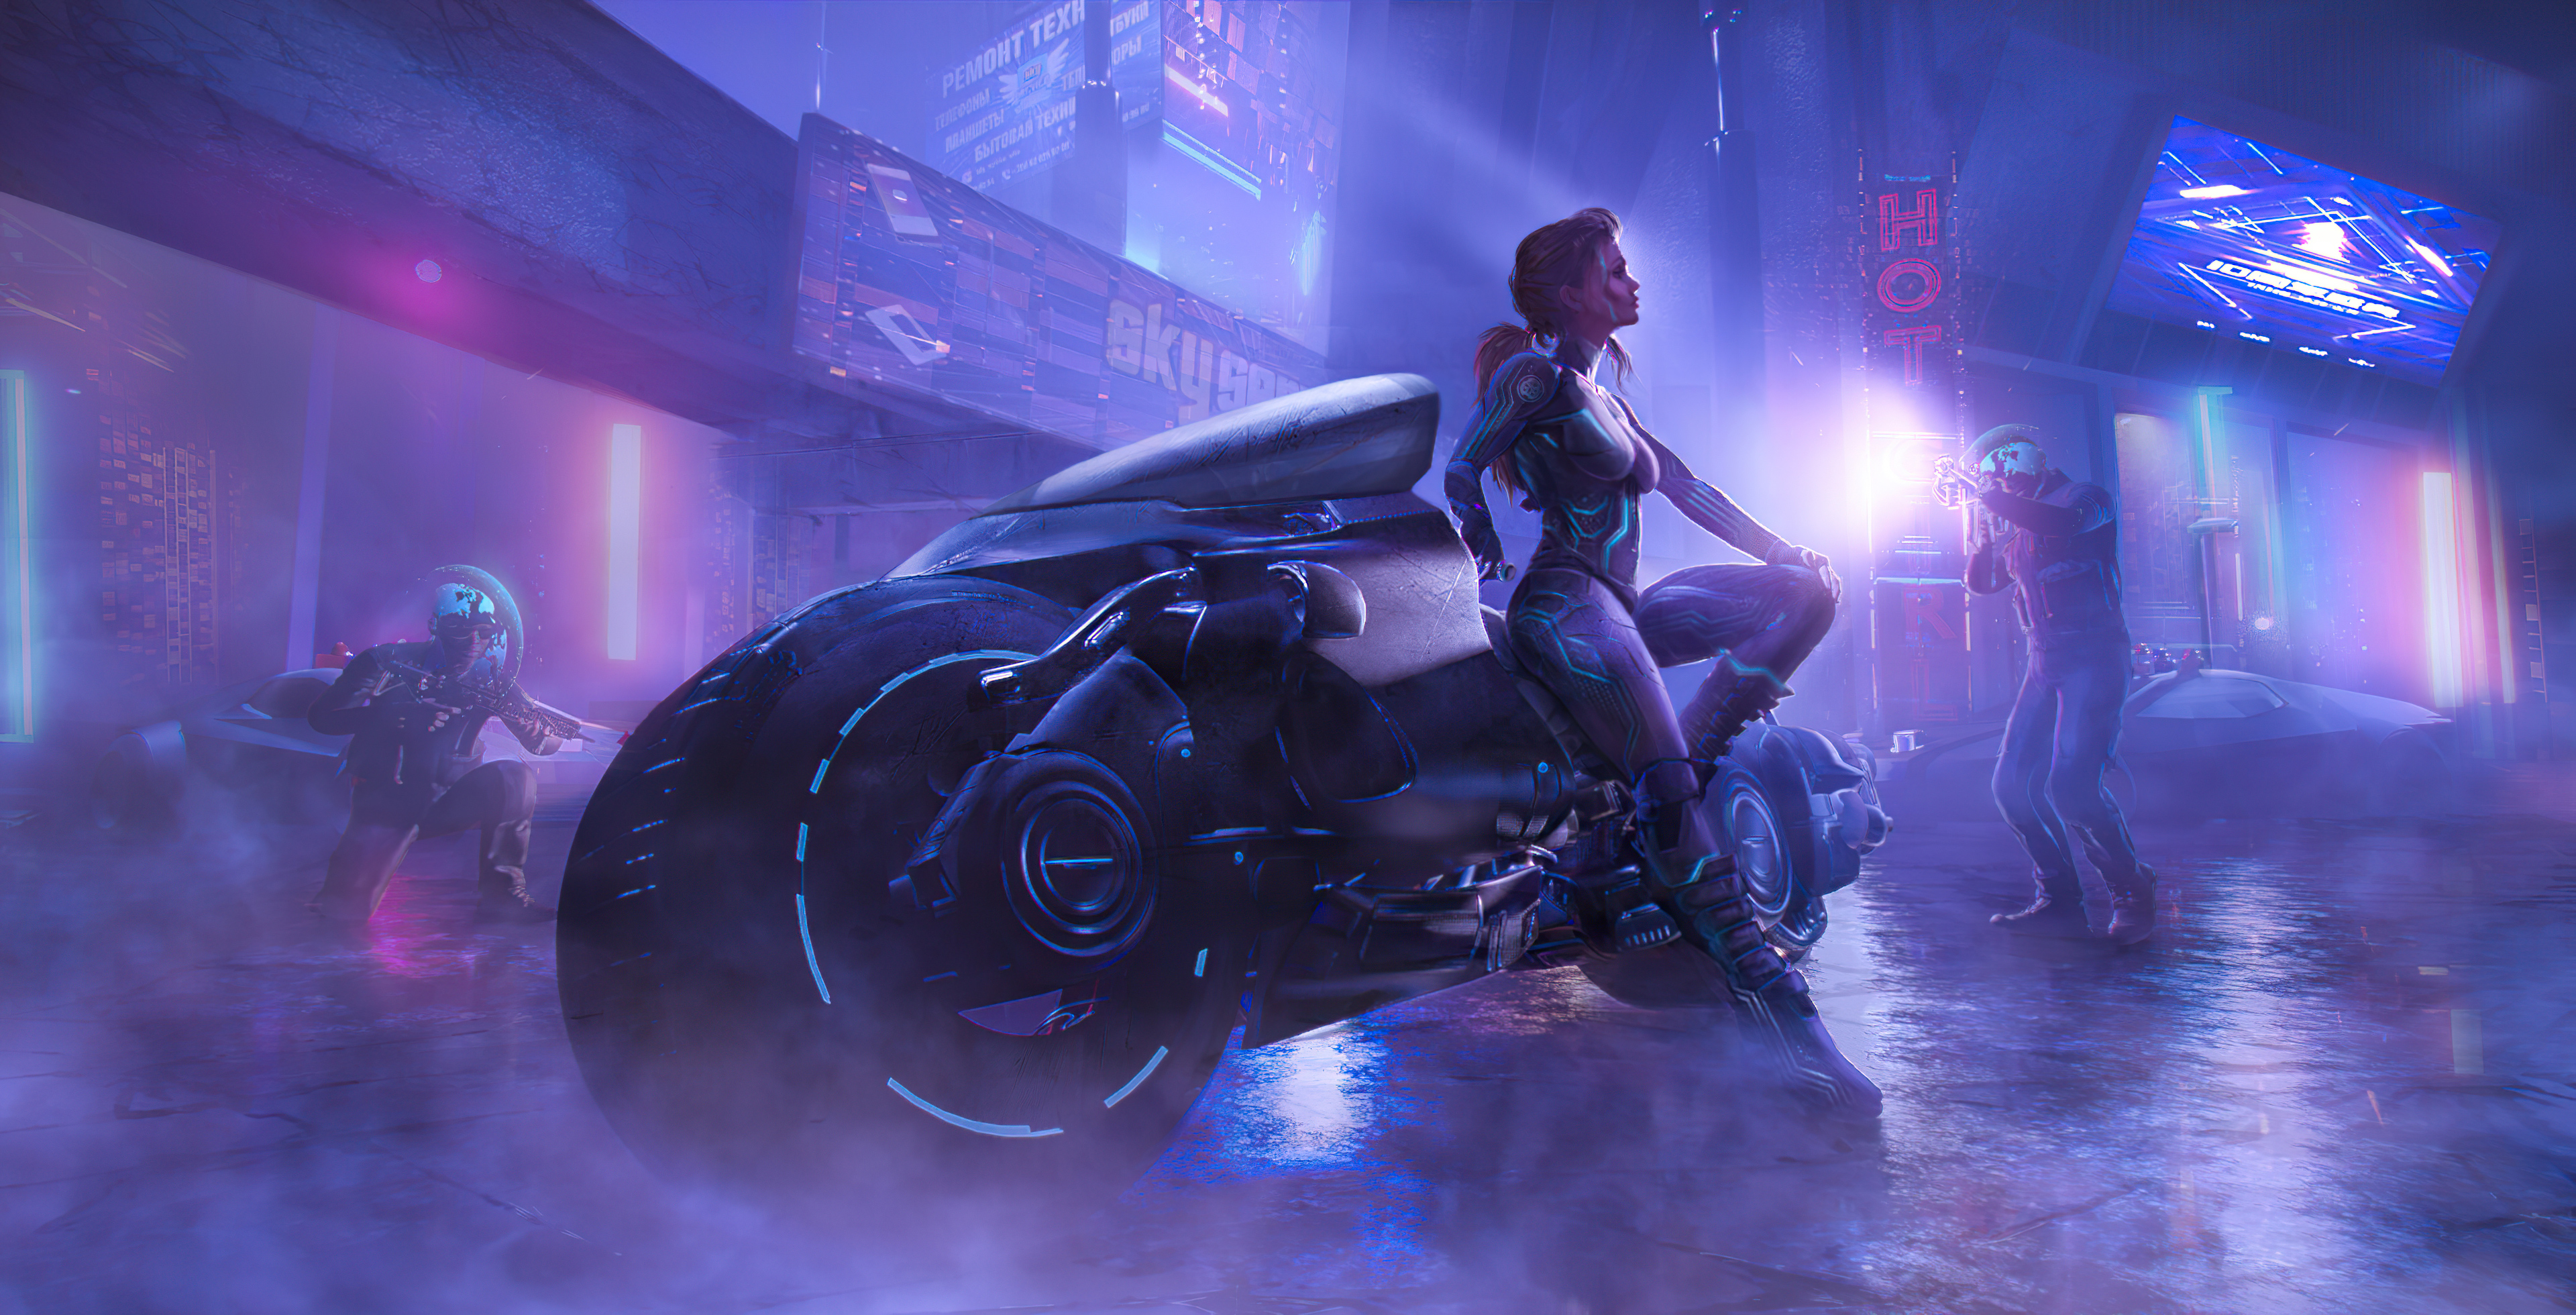 Science Fiction Women 4K Digital Art Artwork Cyberpunk Exosuit Smoke Motorcycle Women With Motorcycl 3840x1960